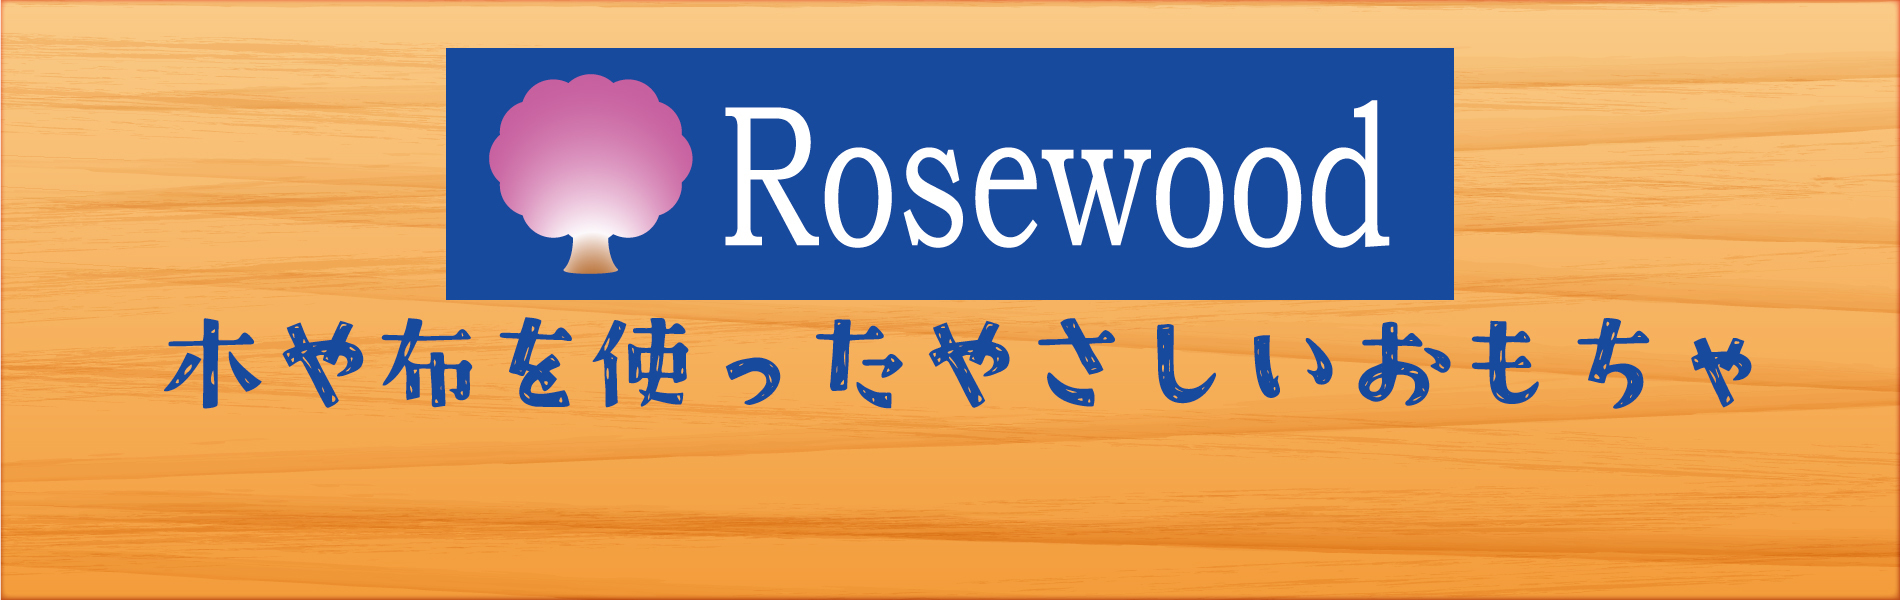 rosewood-game